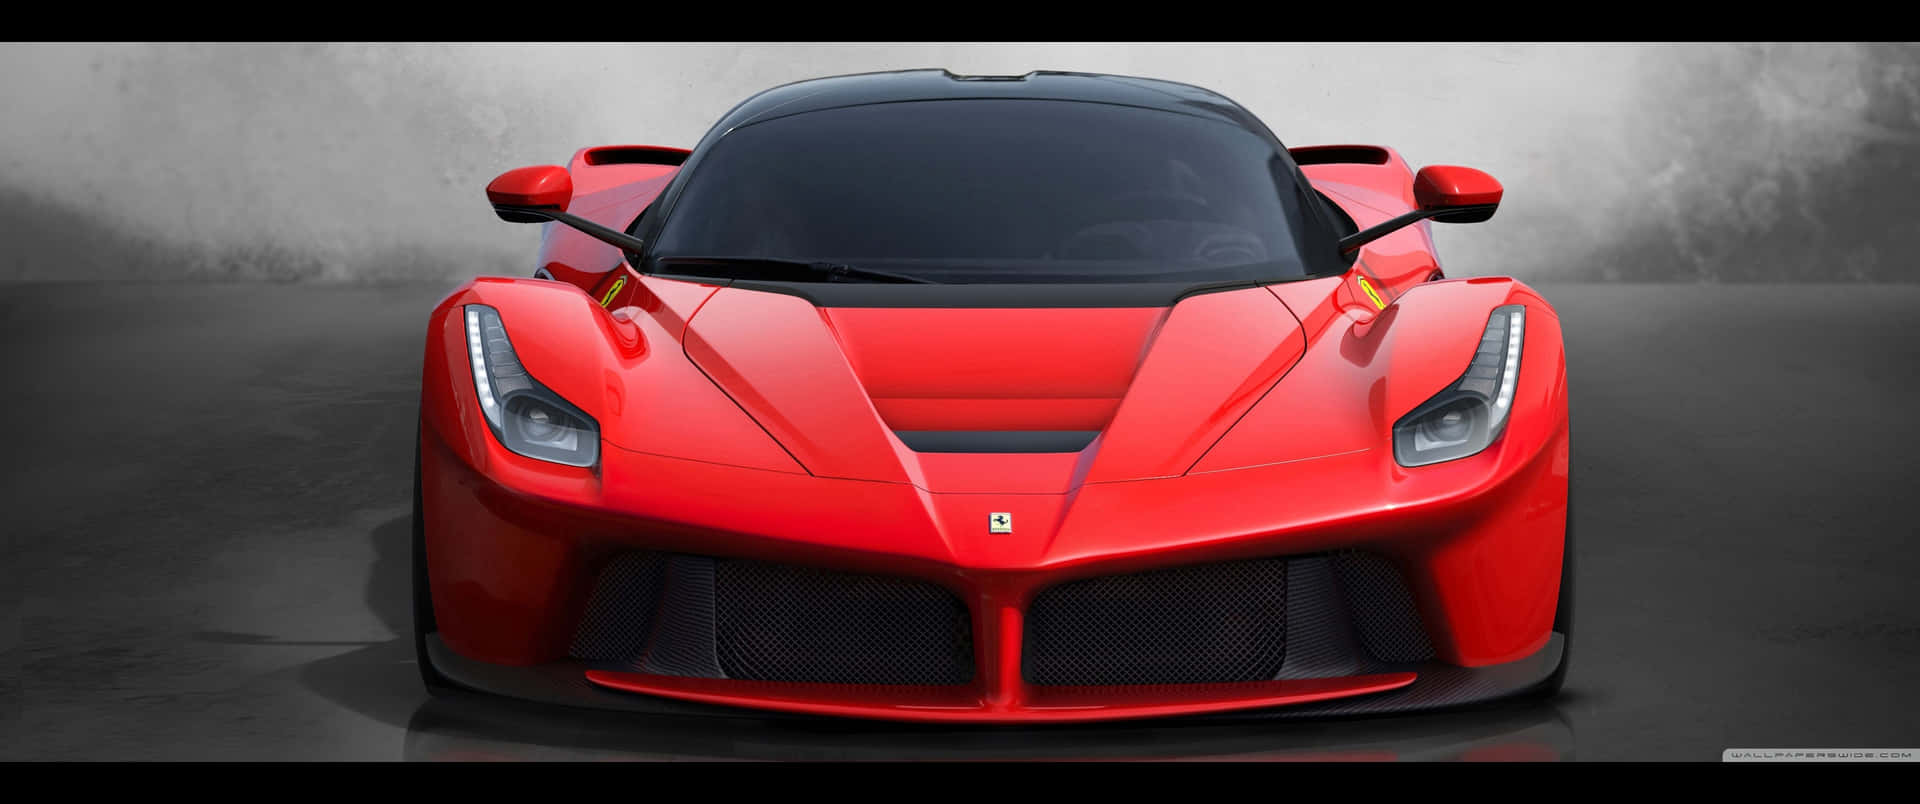 Einbeeindruckender Blick Auf Ferraris Luxuriöses Sportauto